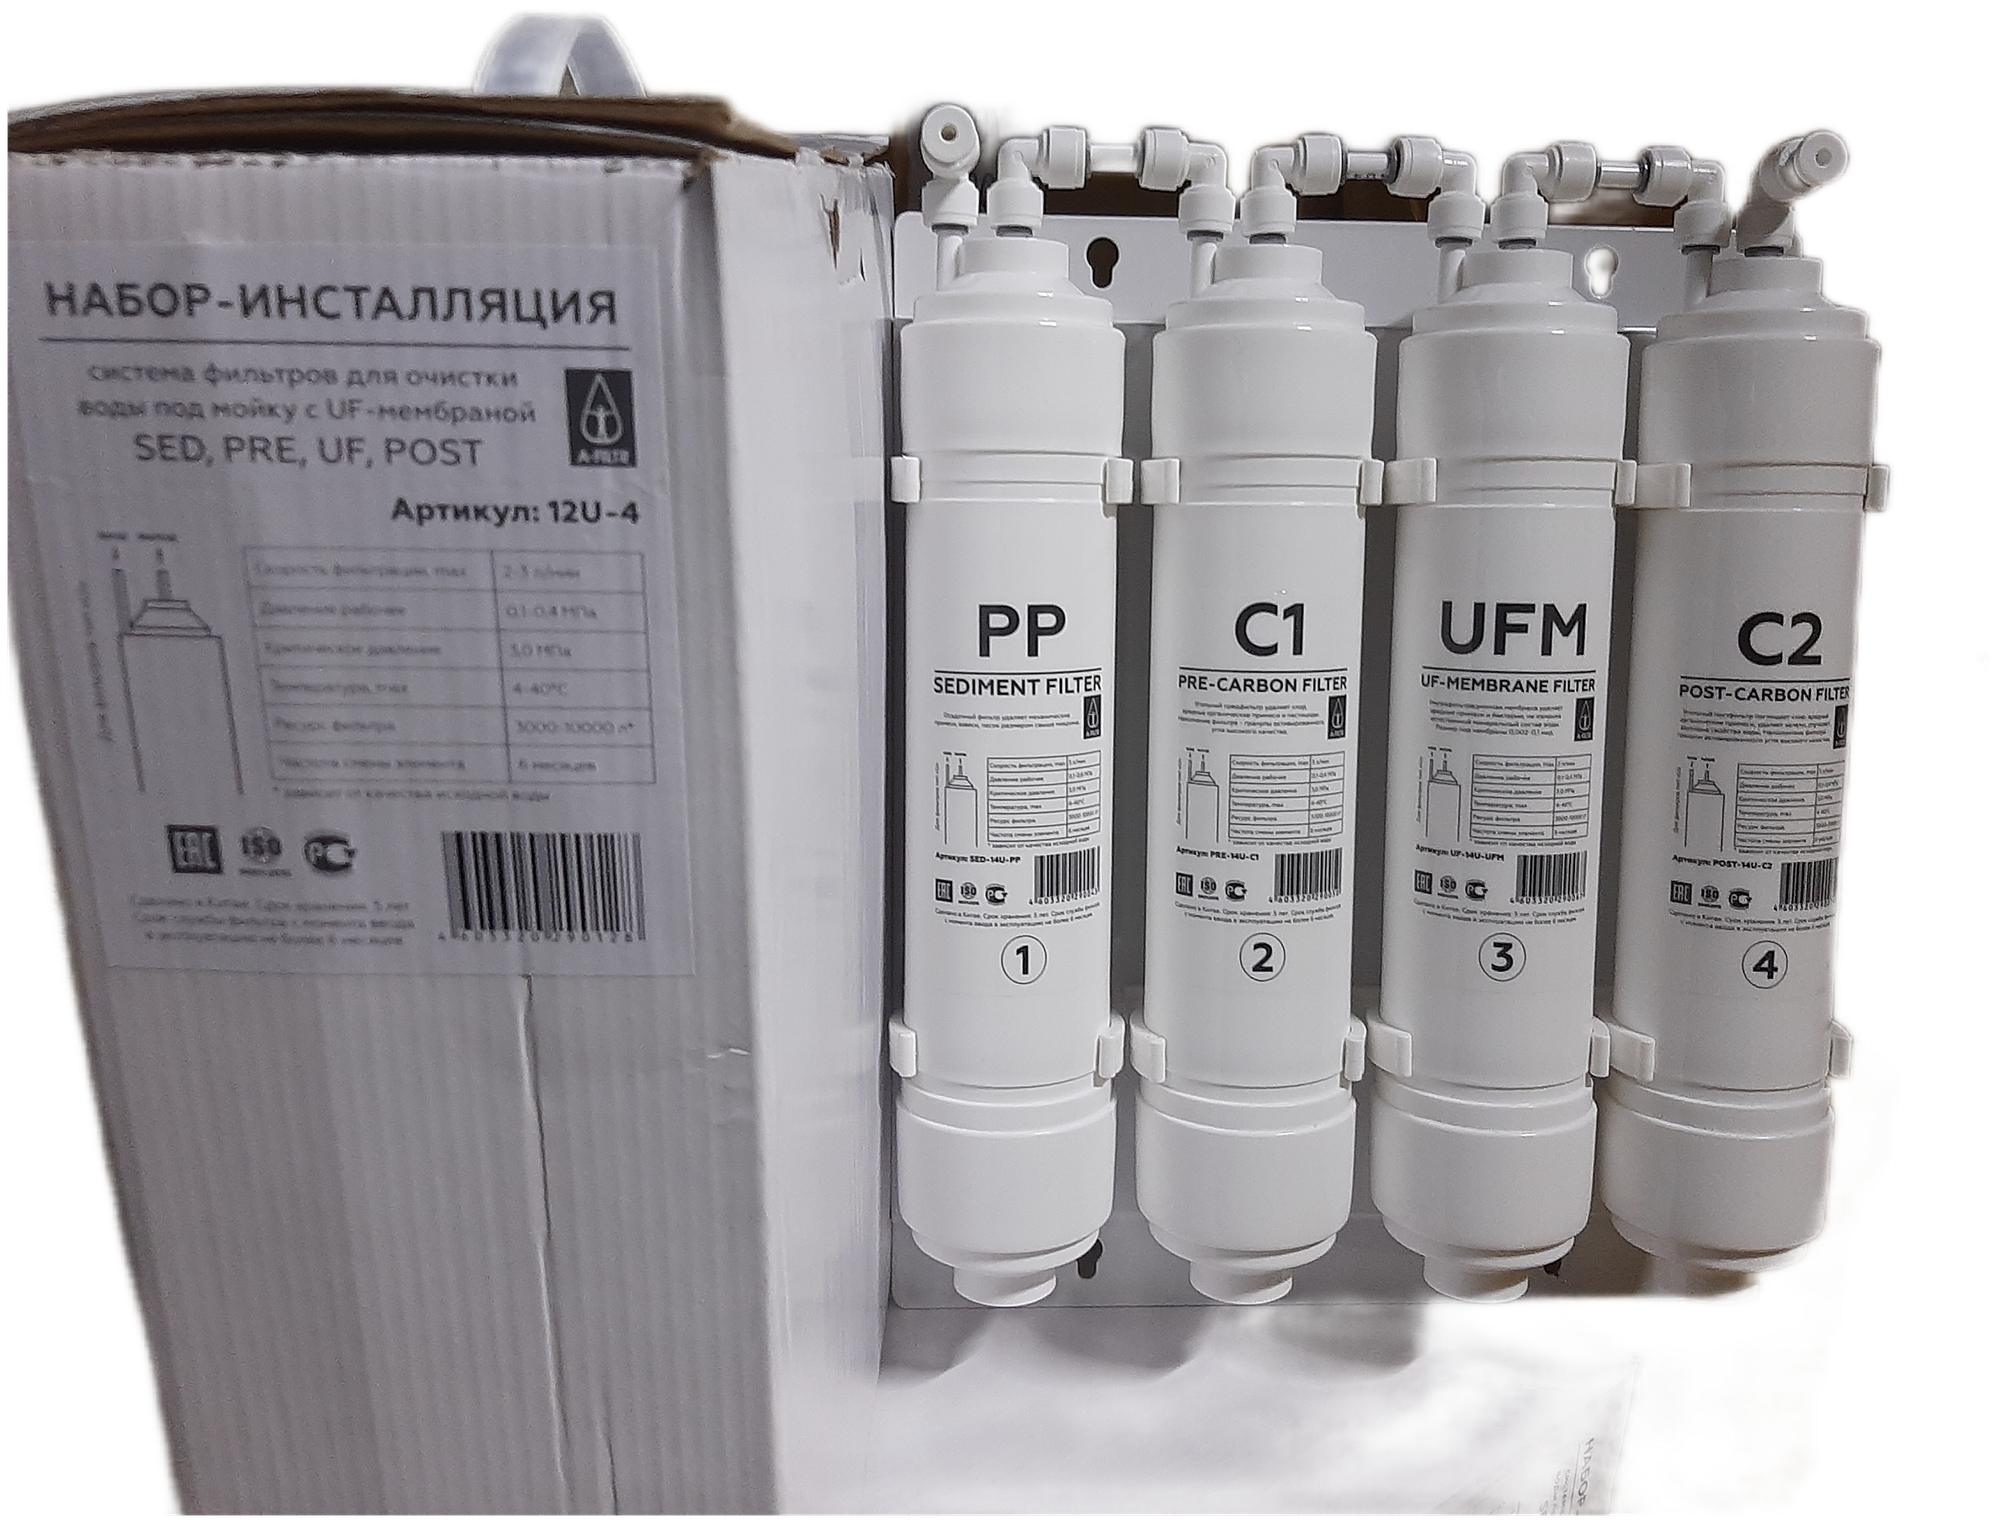 Система фильтрации воды. Набор-инсталляция фильтров для воды 12U-4 (SED, PRE, UF, POST) - фотография № 7